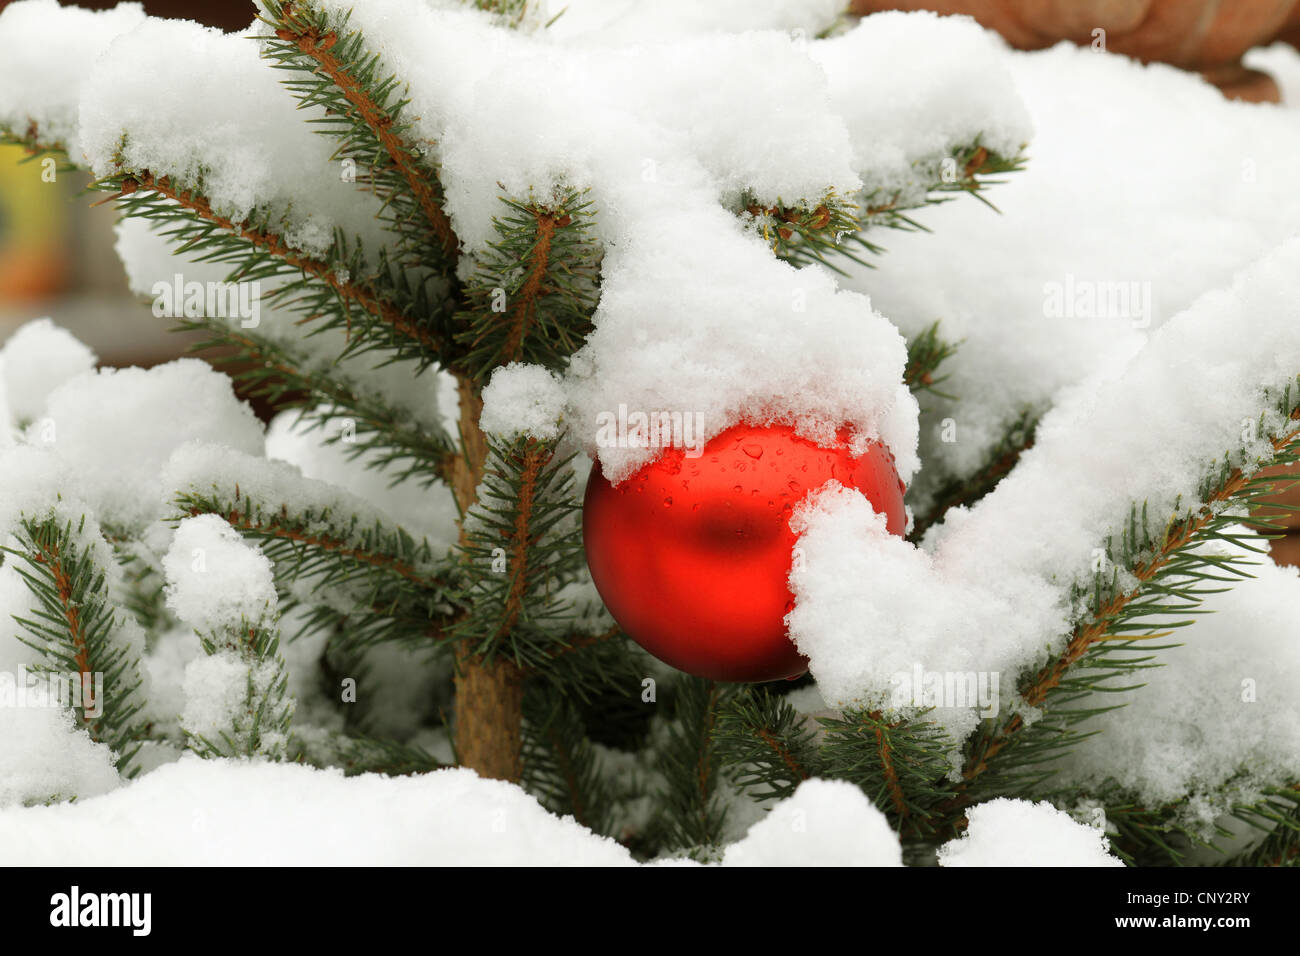 Christmas ball on a snowcovered Christmas tree Stock Photo